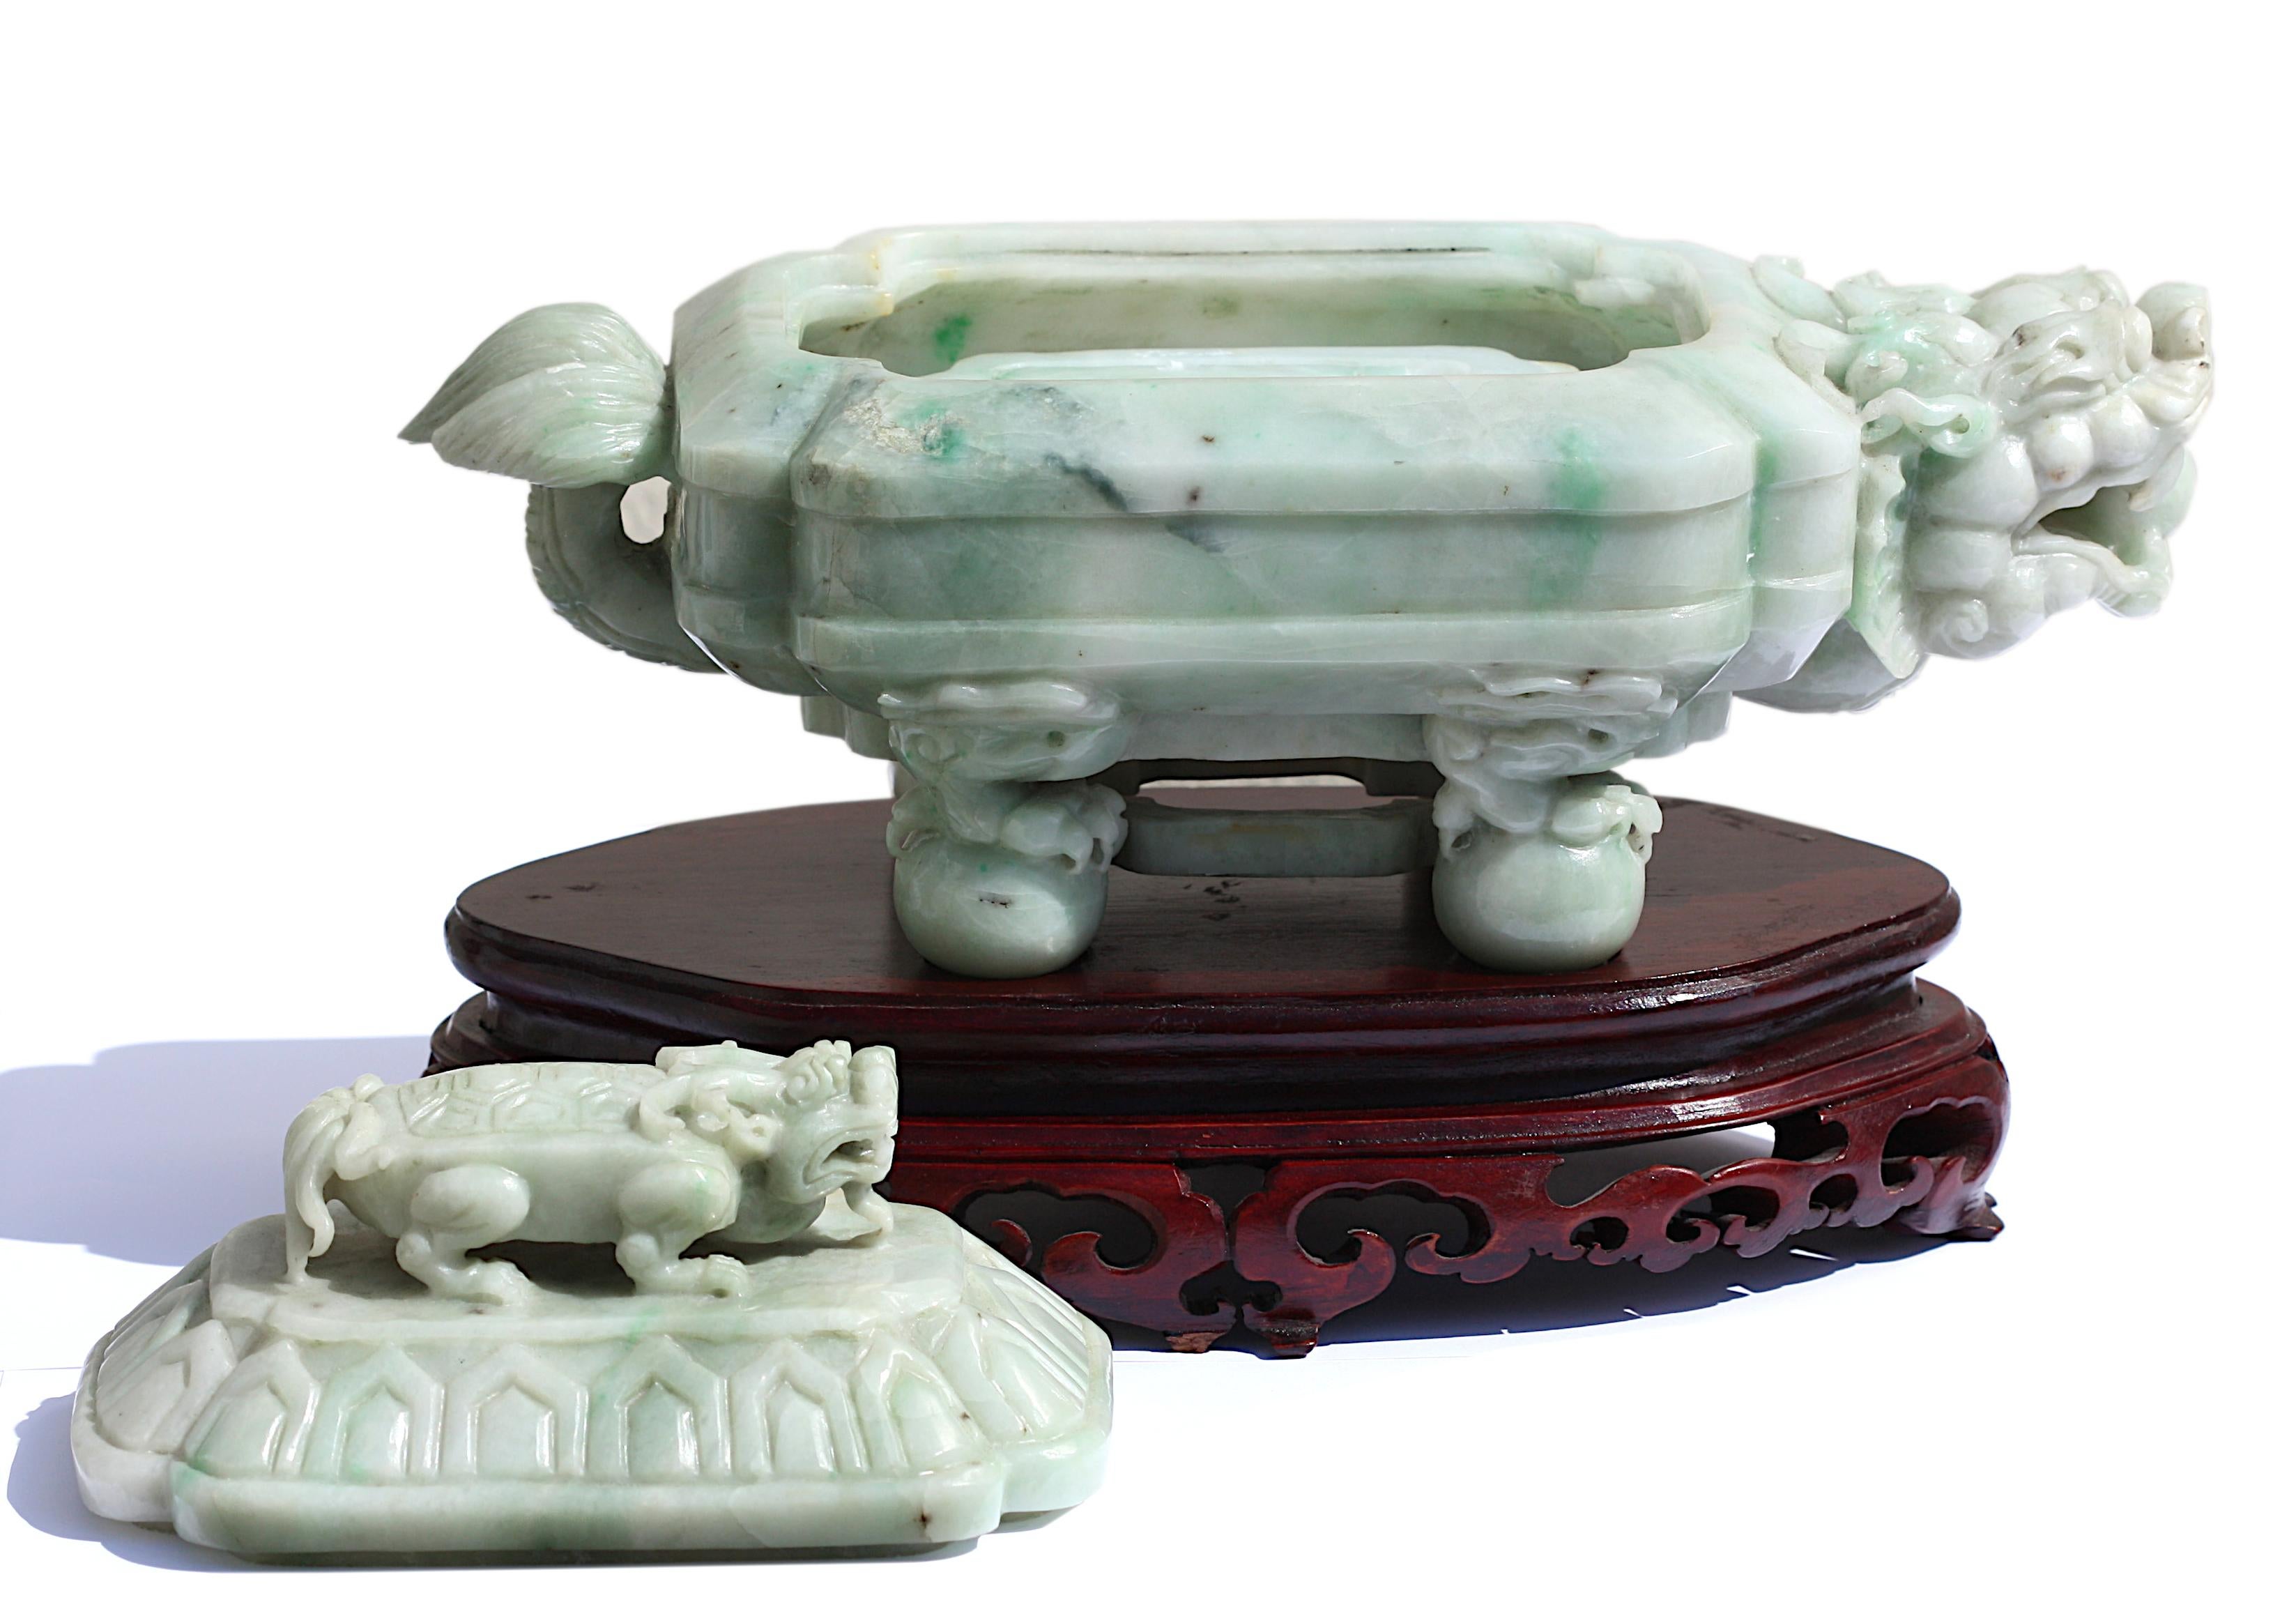 
Boîte et couvercle en jade sculpté chinois, sculptés sous la forme d'une tortue mythique cornue reposant sur quatre boules, le couvercle comportant une petite tortue et s'ouvrant pour révéler une pierre d'encre, la pierre doucement polie est d'une